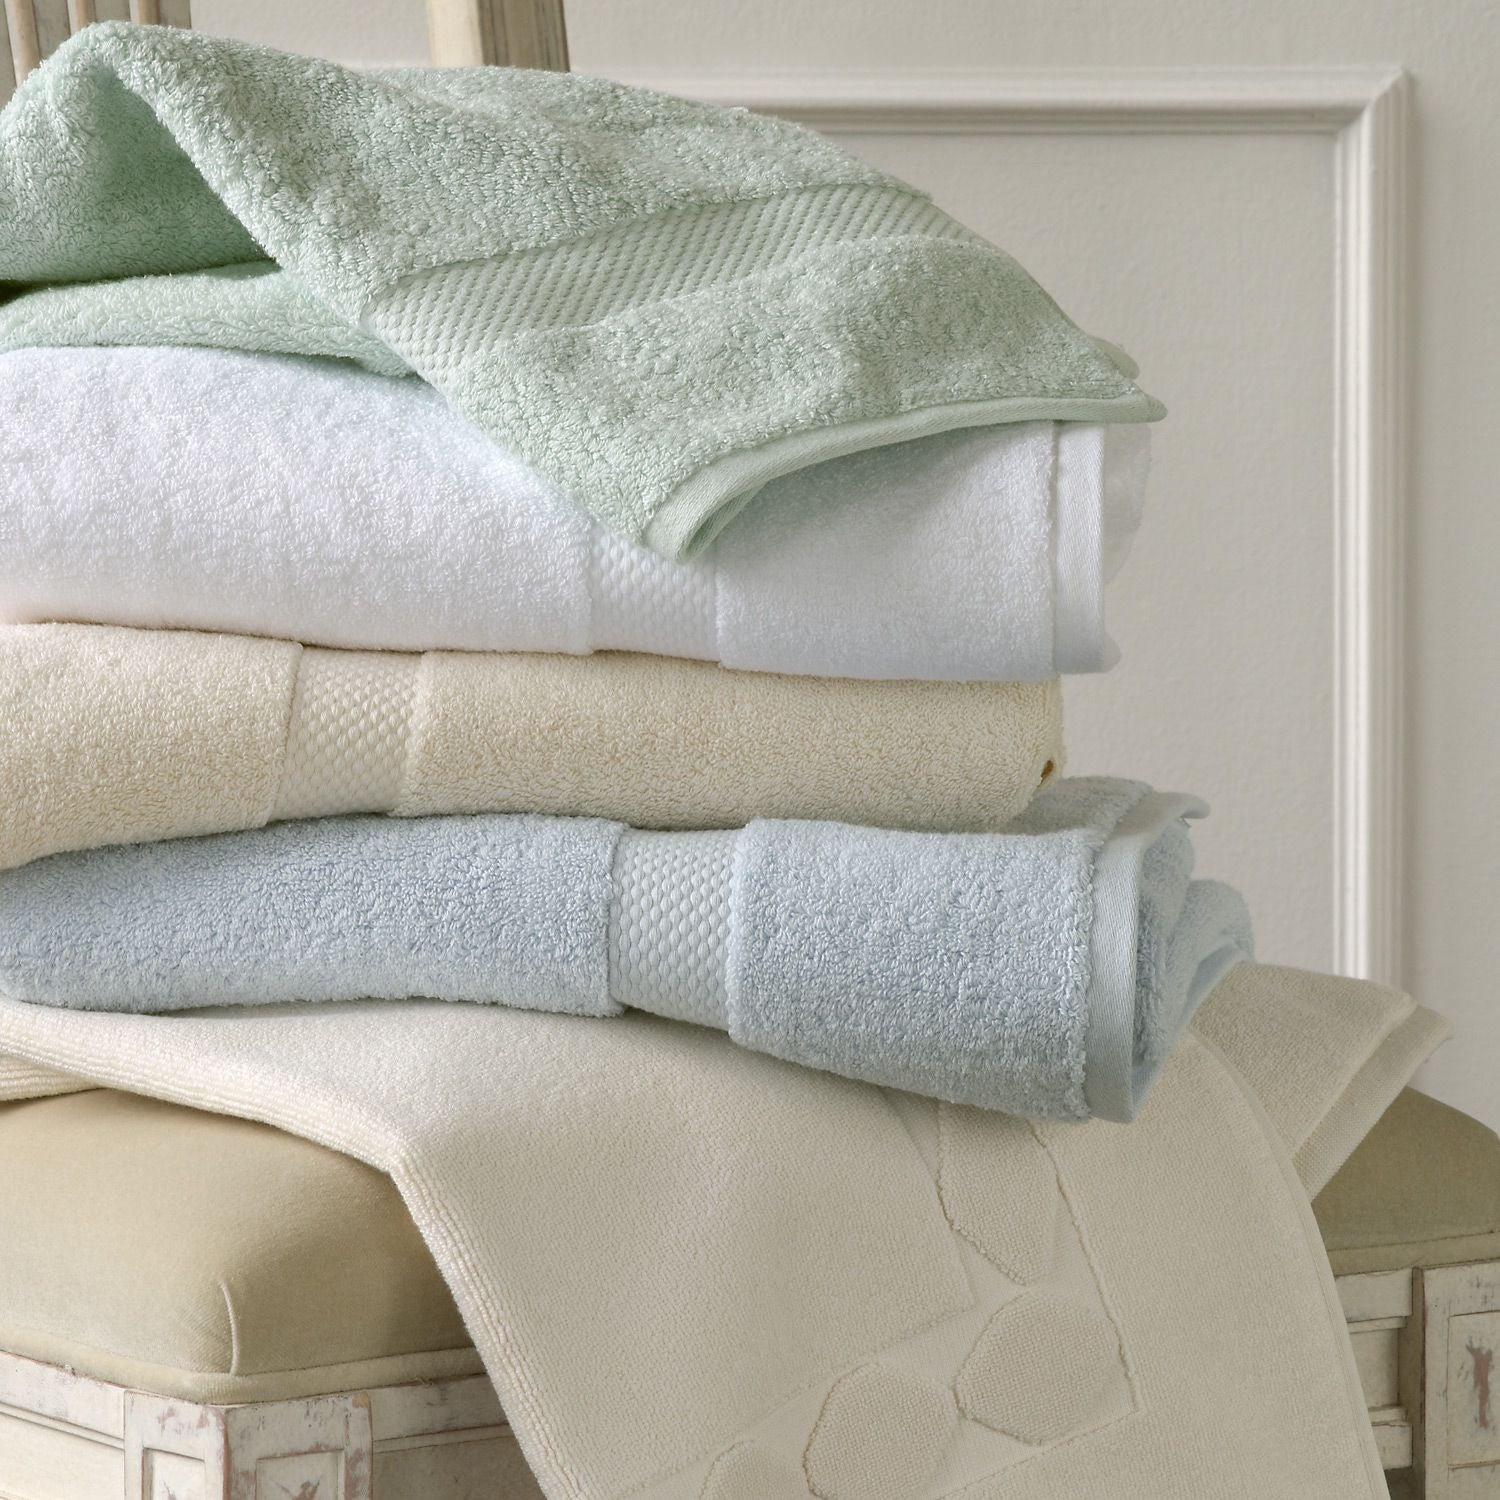 Полотенце покрывало. Постельное белье и полотенца. Текстиль для дома. Текстиль полотенца. Пледы полотенца постельное белье.